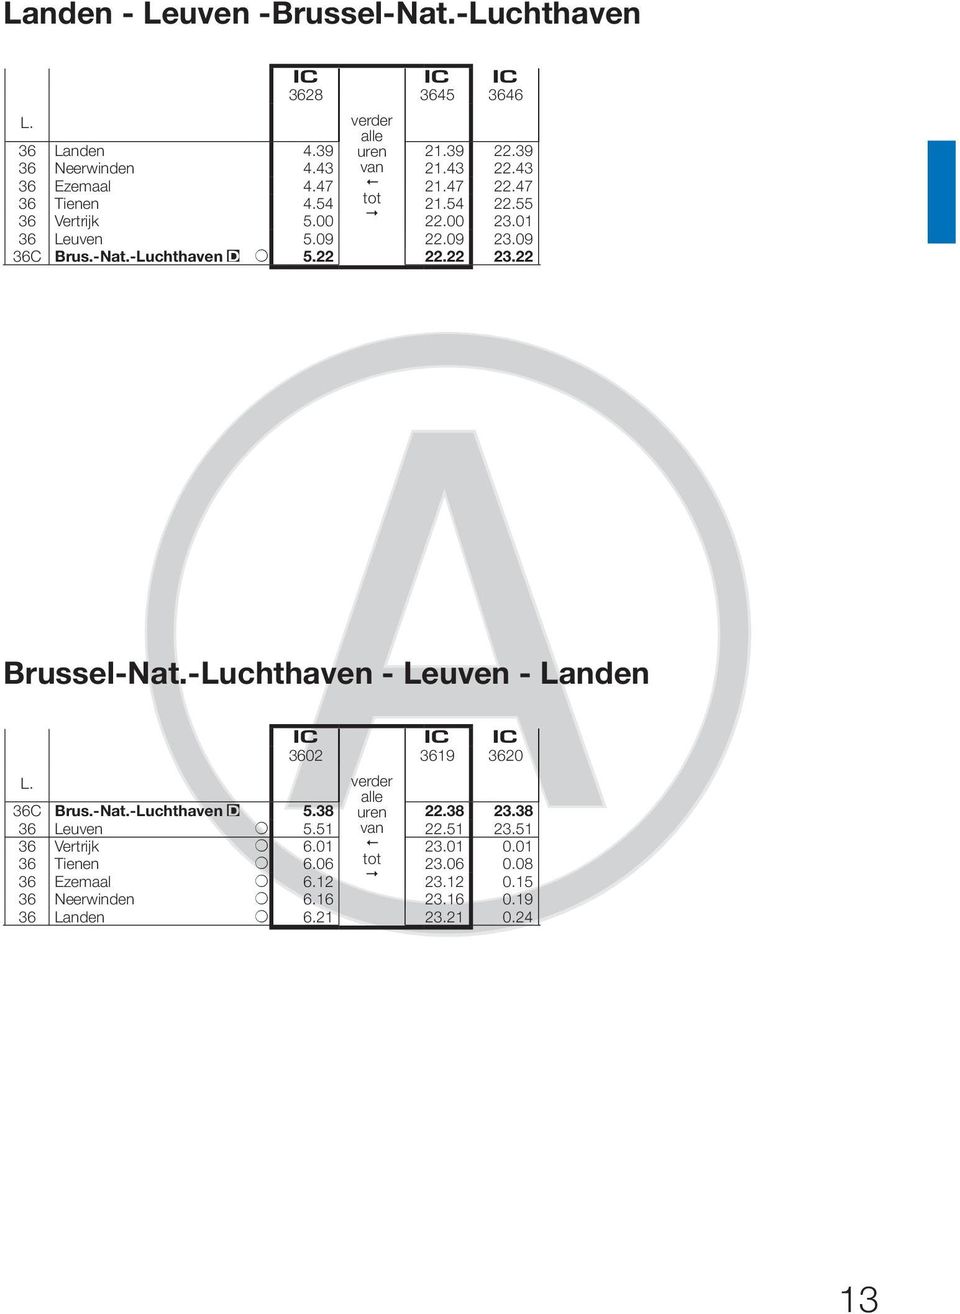 22 3 Brussel-Nat.-Luchthaven - Leuven - Landen 3602 3619 3620 36C 36 Brus.-Nat.-Luchthaven Leuven + 5.38 5.51 alle 22.38 22.51 23.38 23.